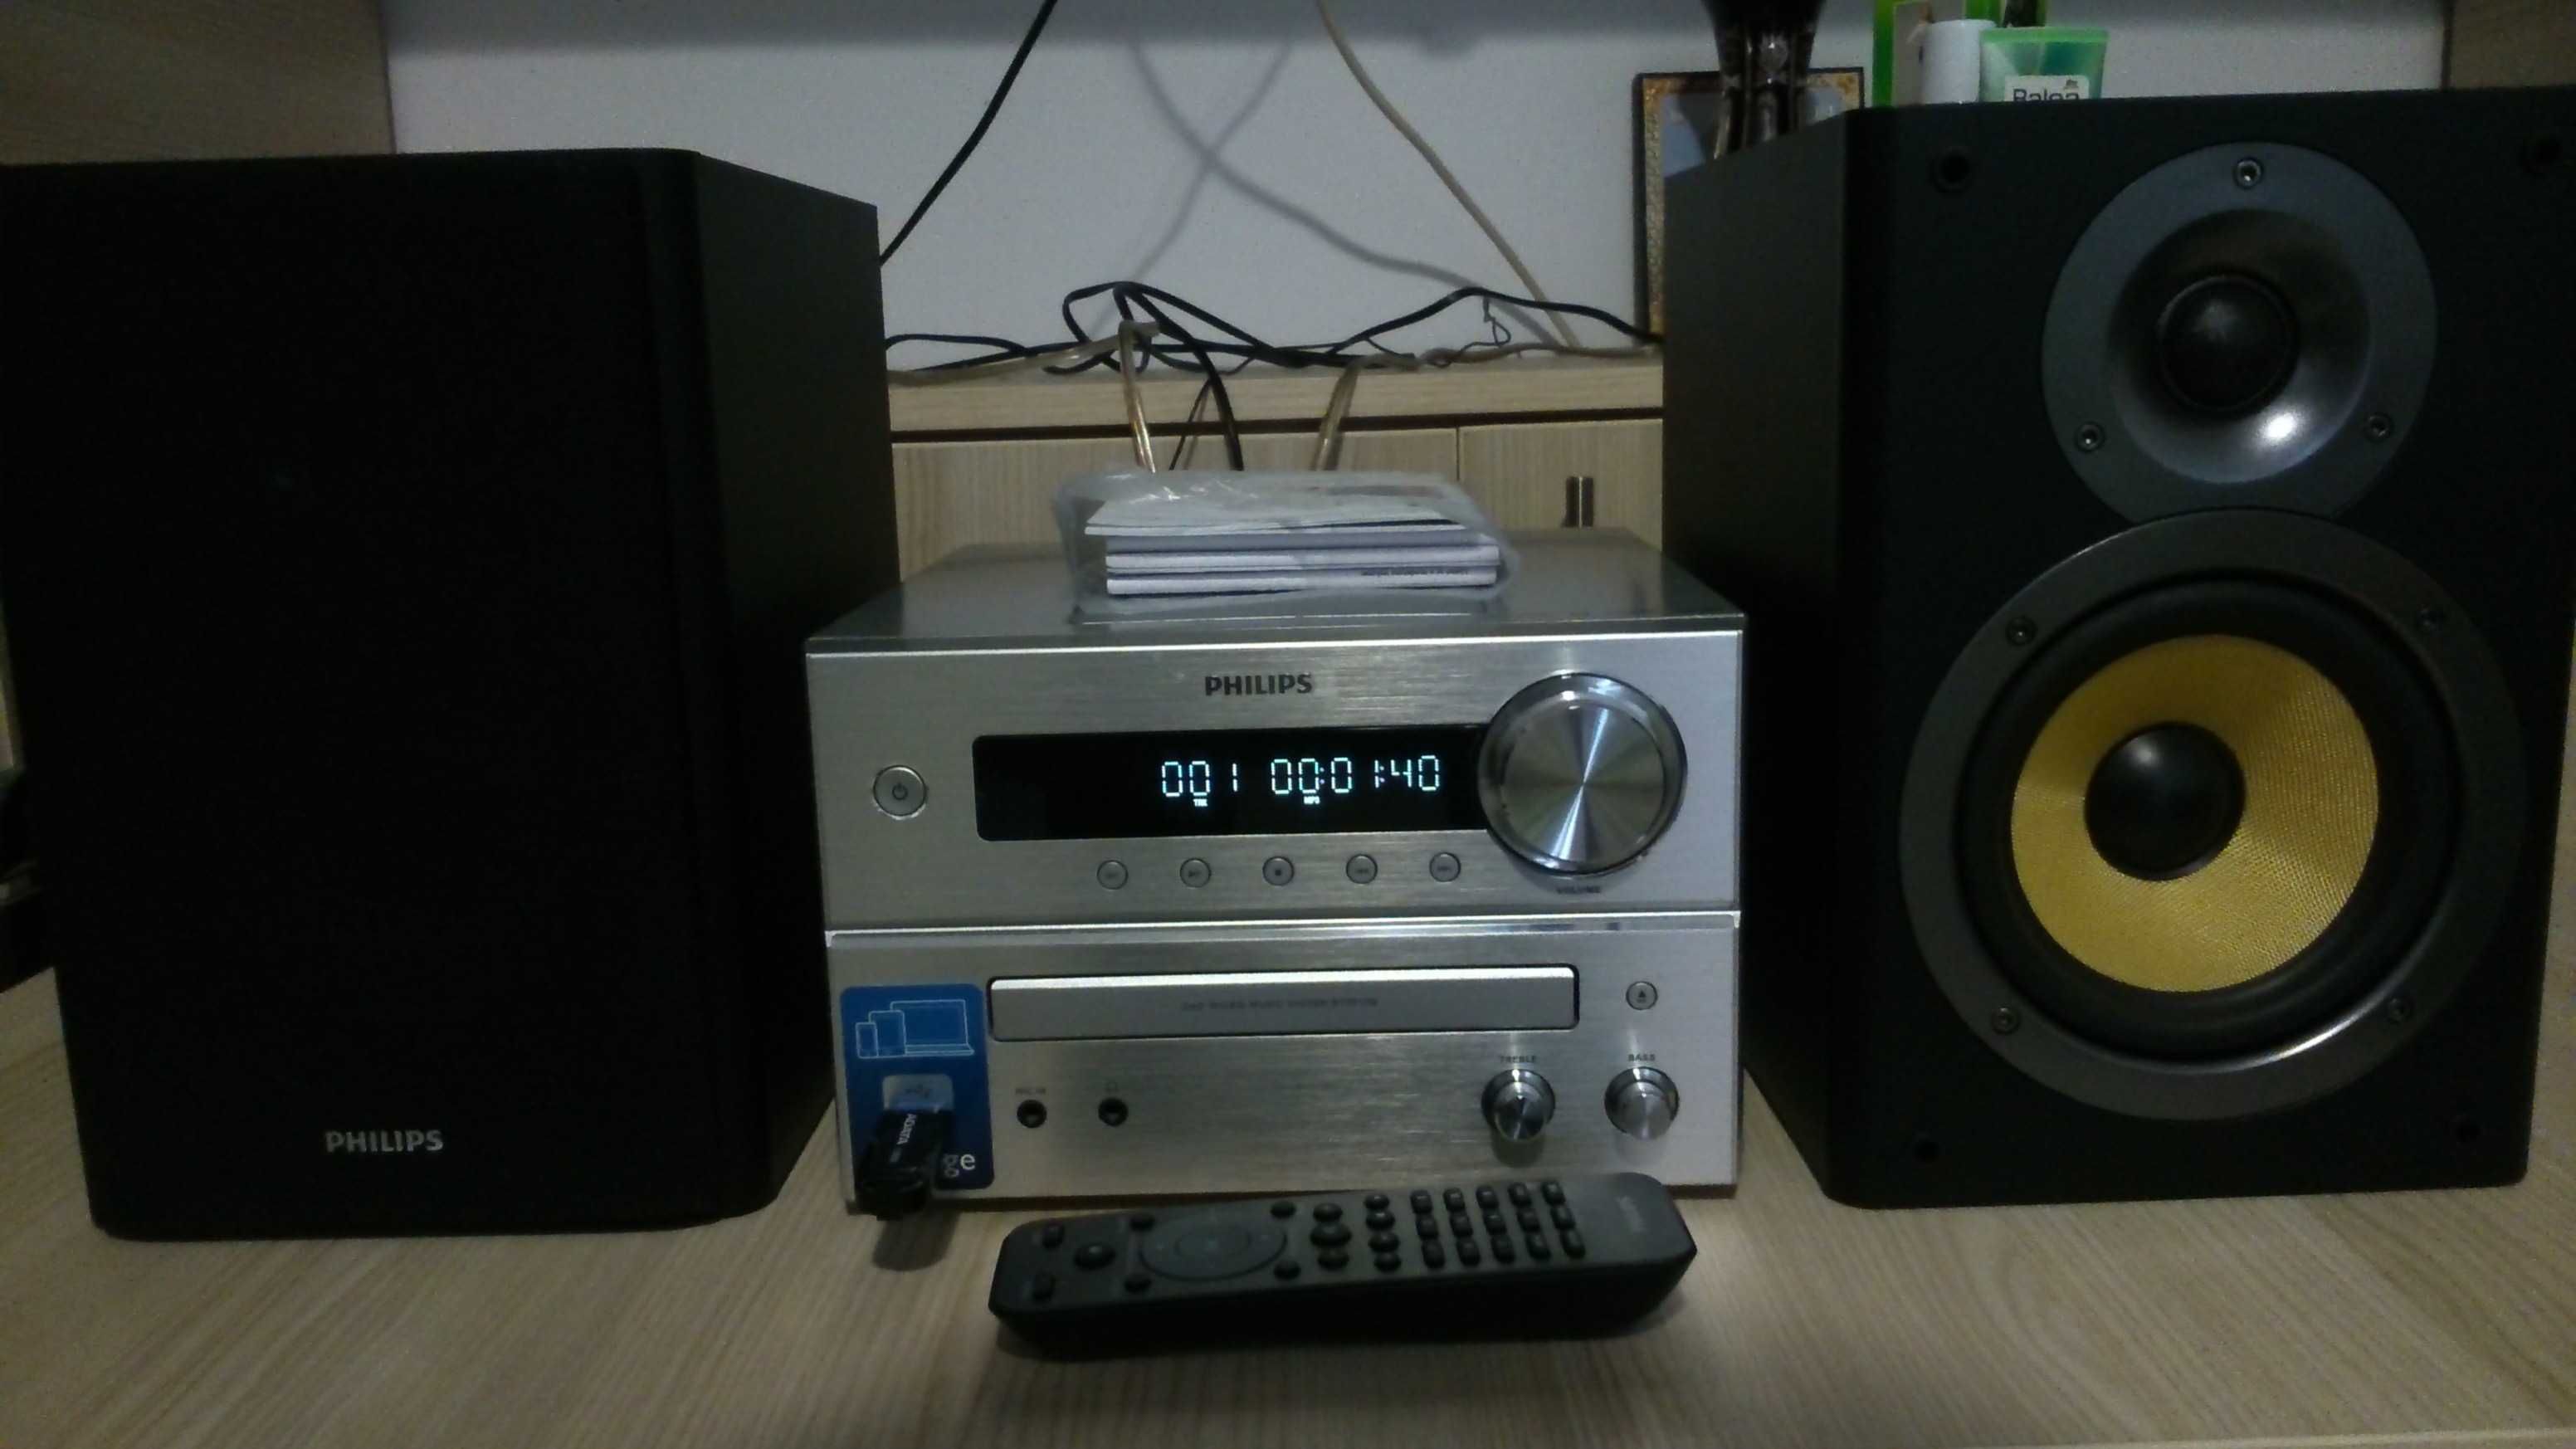 Minisistem  audio  Philips  BTD  7170/12  -  Stare  Noua